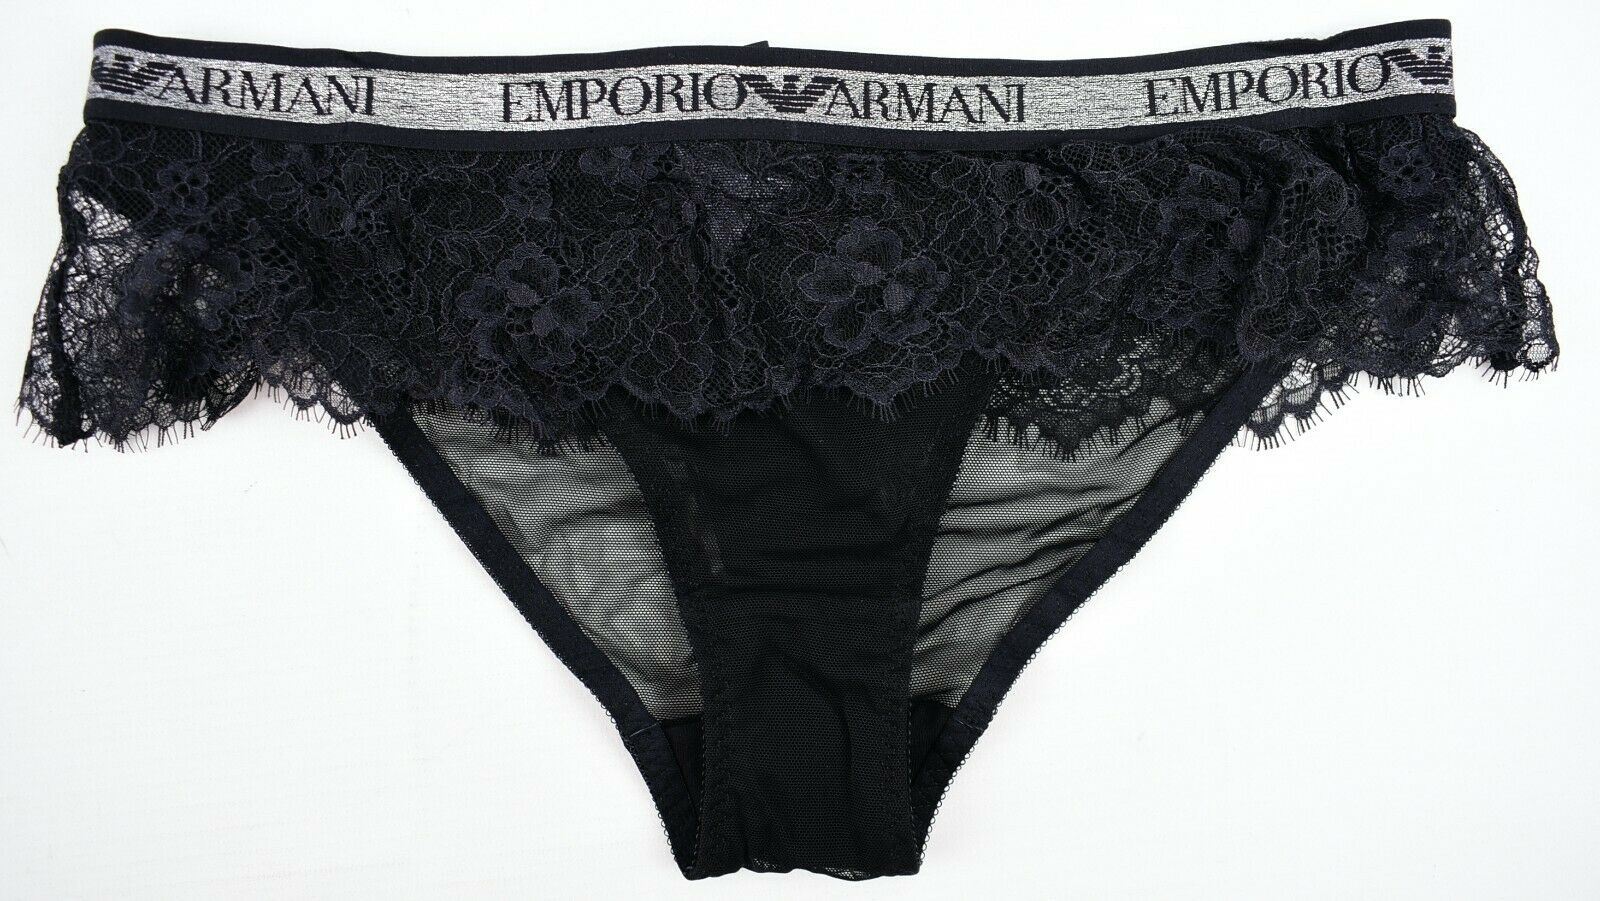 EMPORIO ARMANI Underwear: Women's Black Lace Frill Briefs Knickers, size M